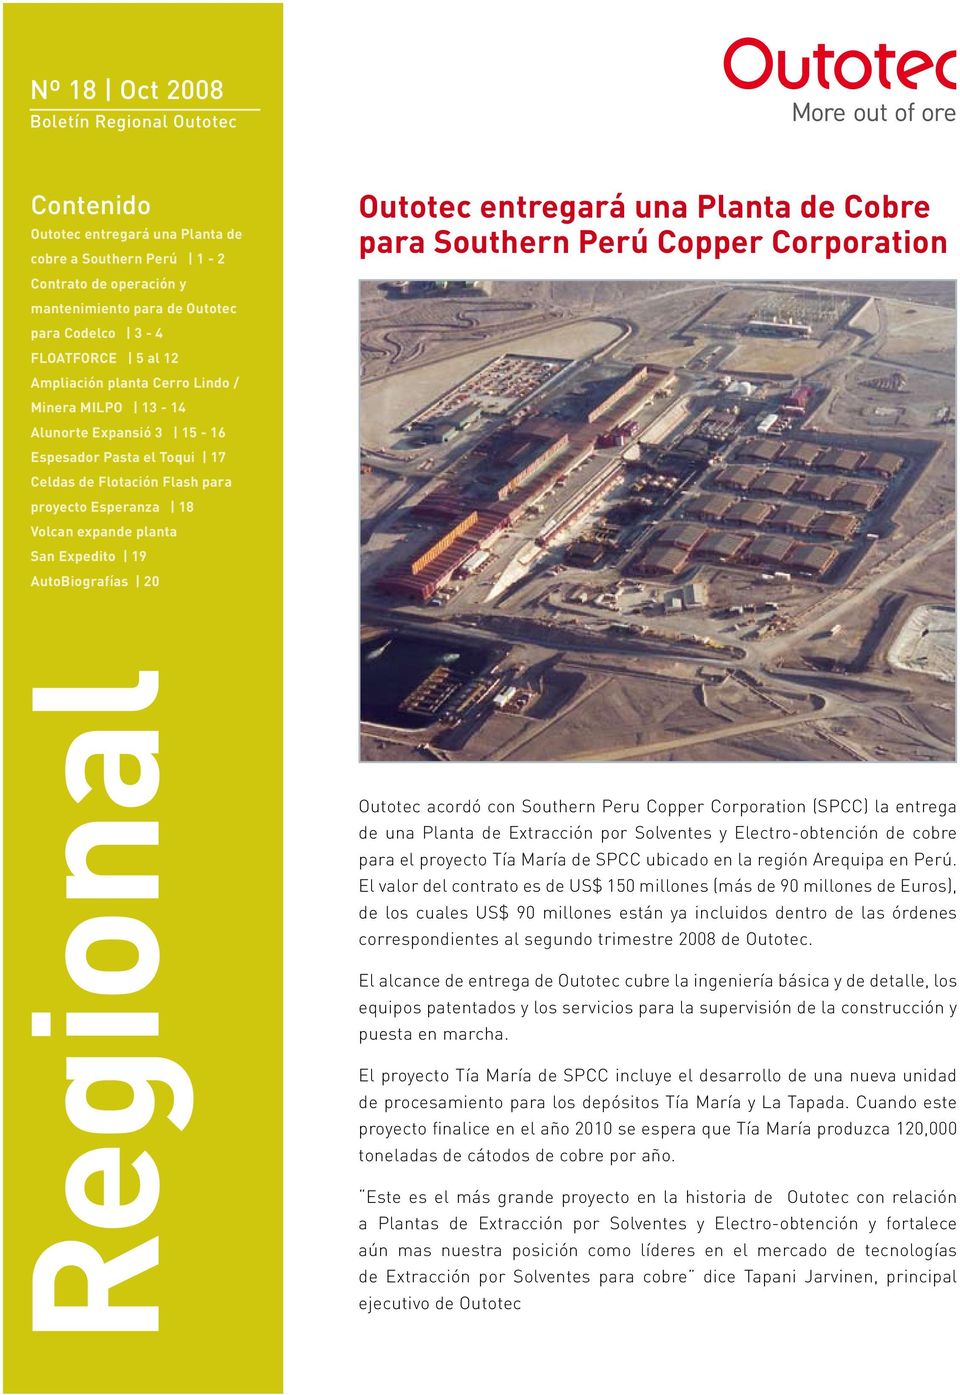 AutoBiografías 20 Outotec entregará una Planta de Cobre para Southern Perú Copper Corporation Regional Outotec acordó con Southern Peru Copper Corporation (SPCC) la entrega de una Planta de